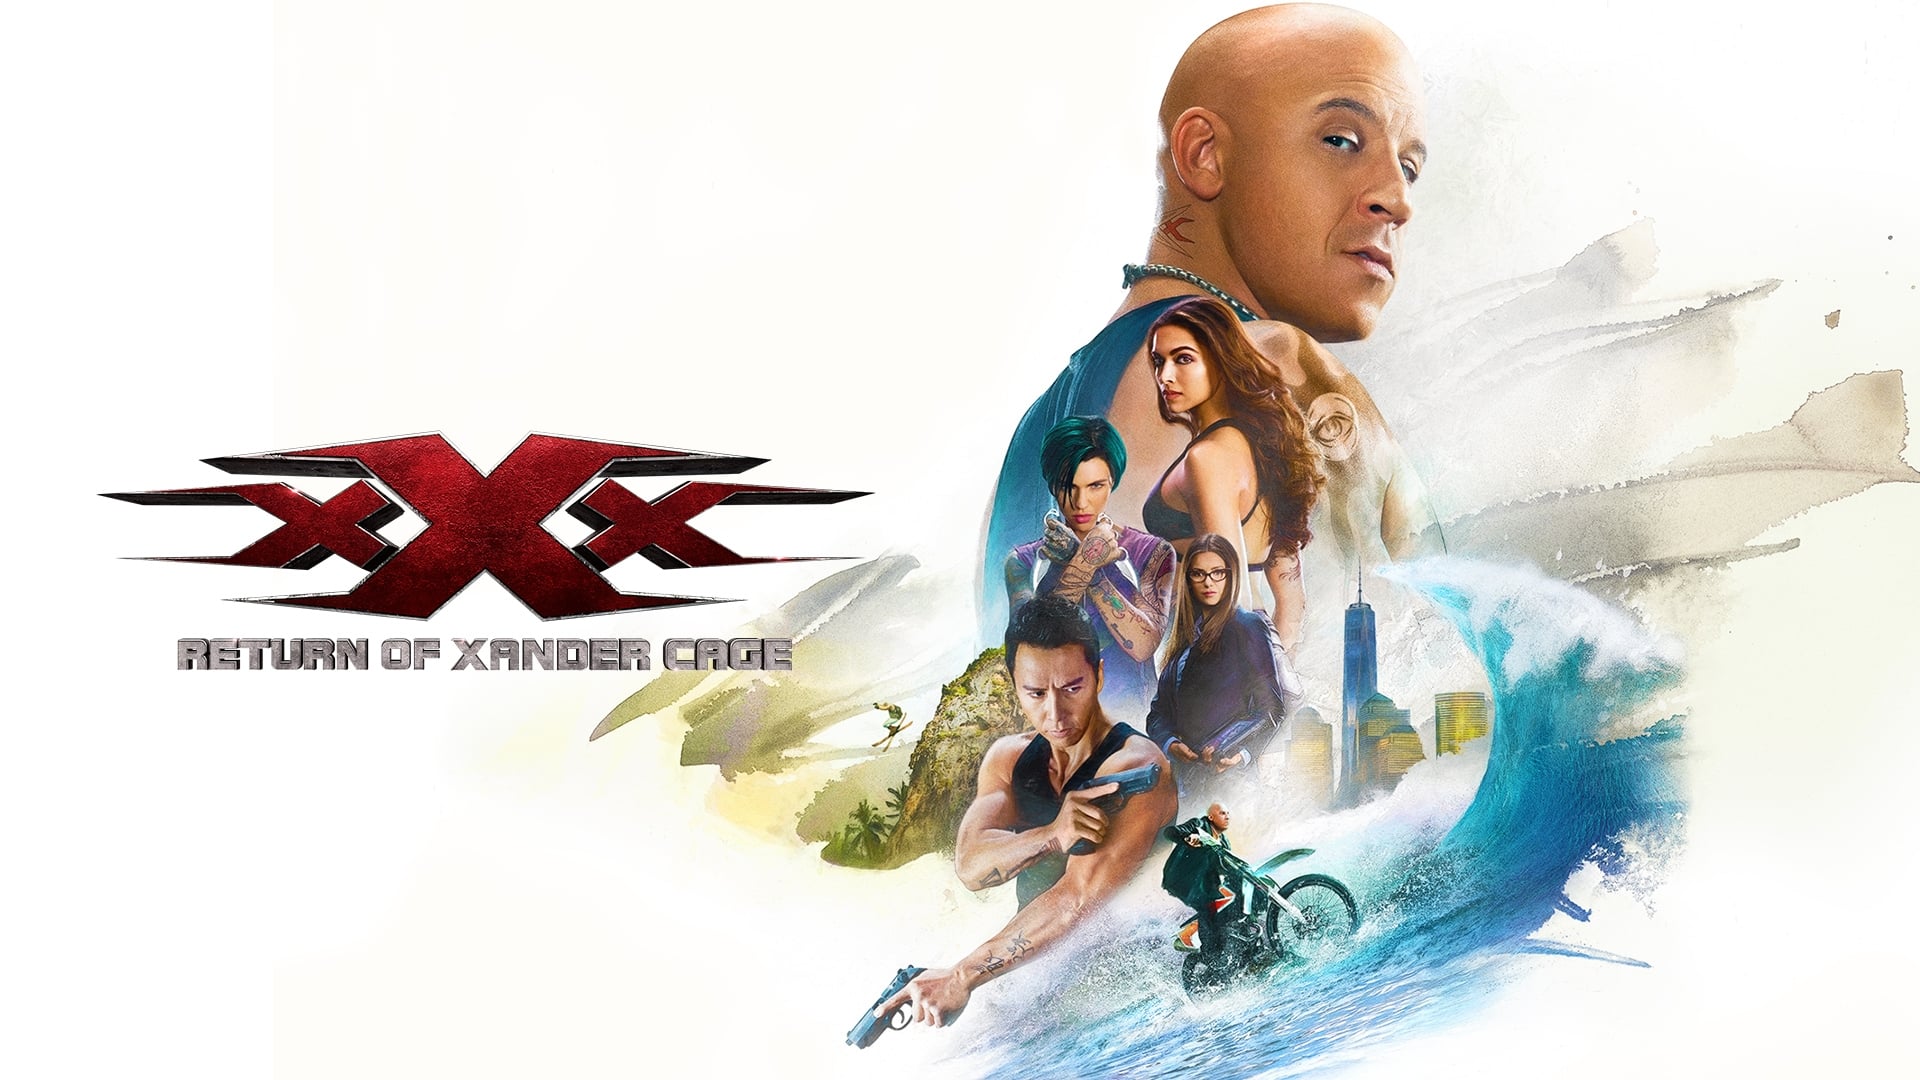 xXx - Il ritorno di Xander Cage (2017)